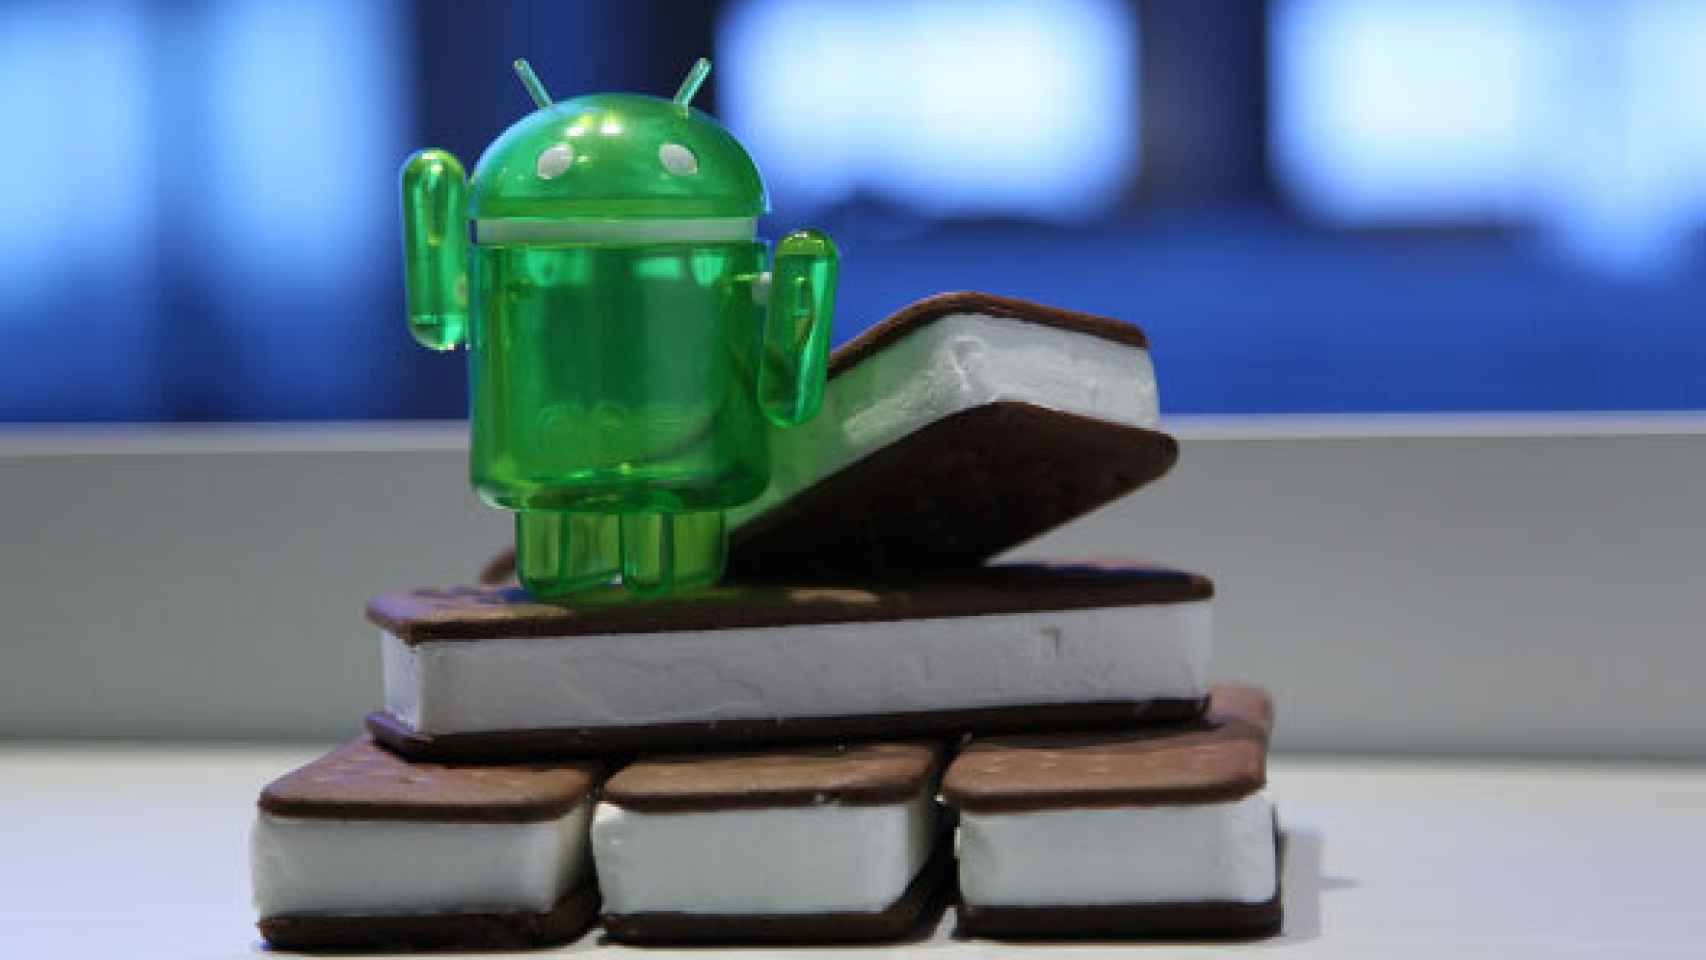 La gama Xperia se actualizará a Android 4.0 a finales de Abril